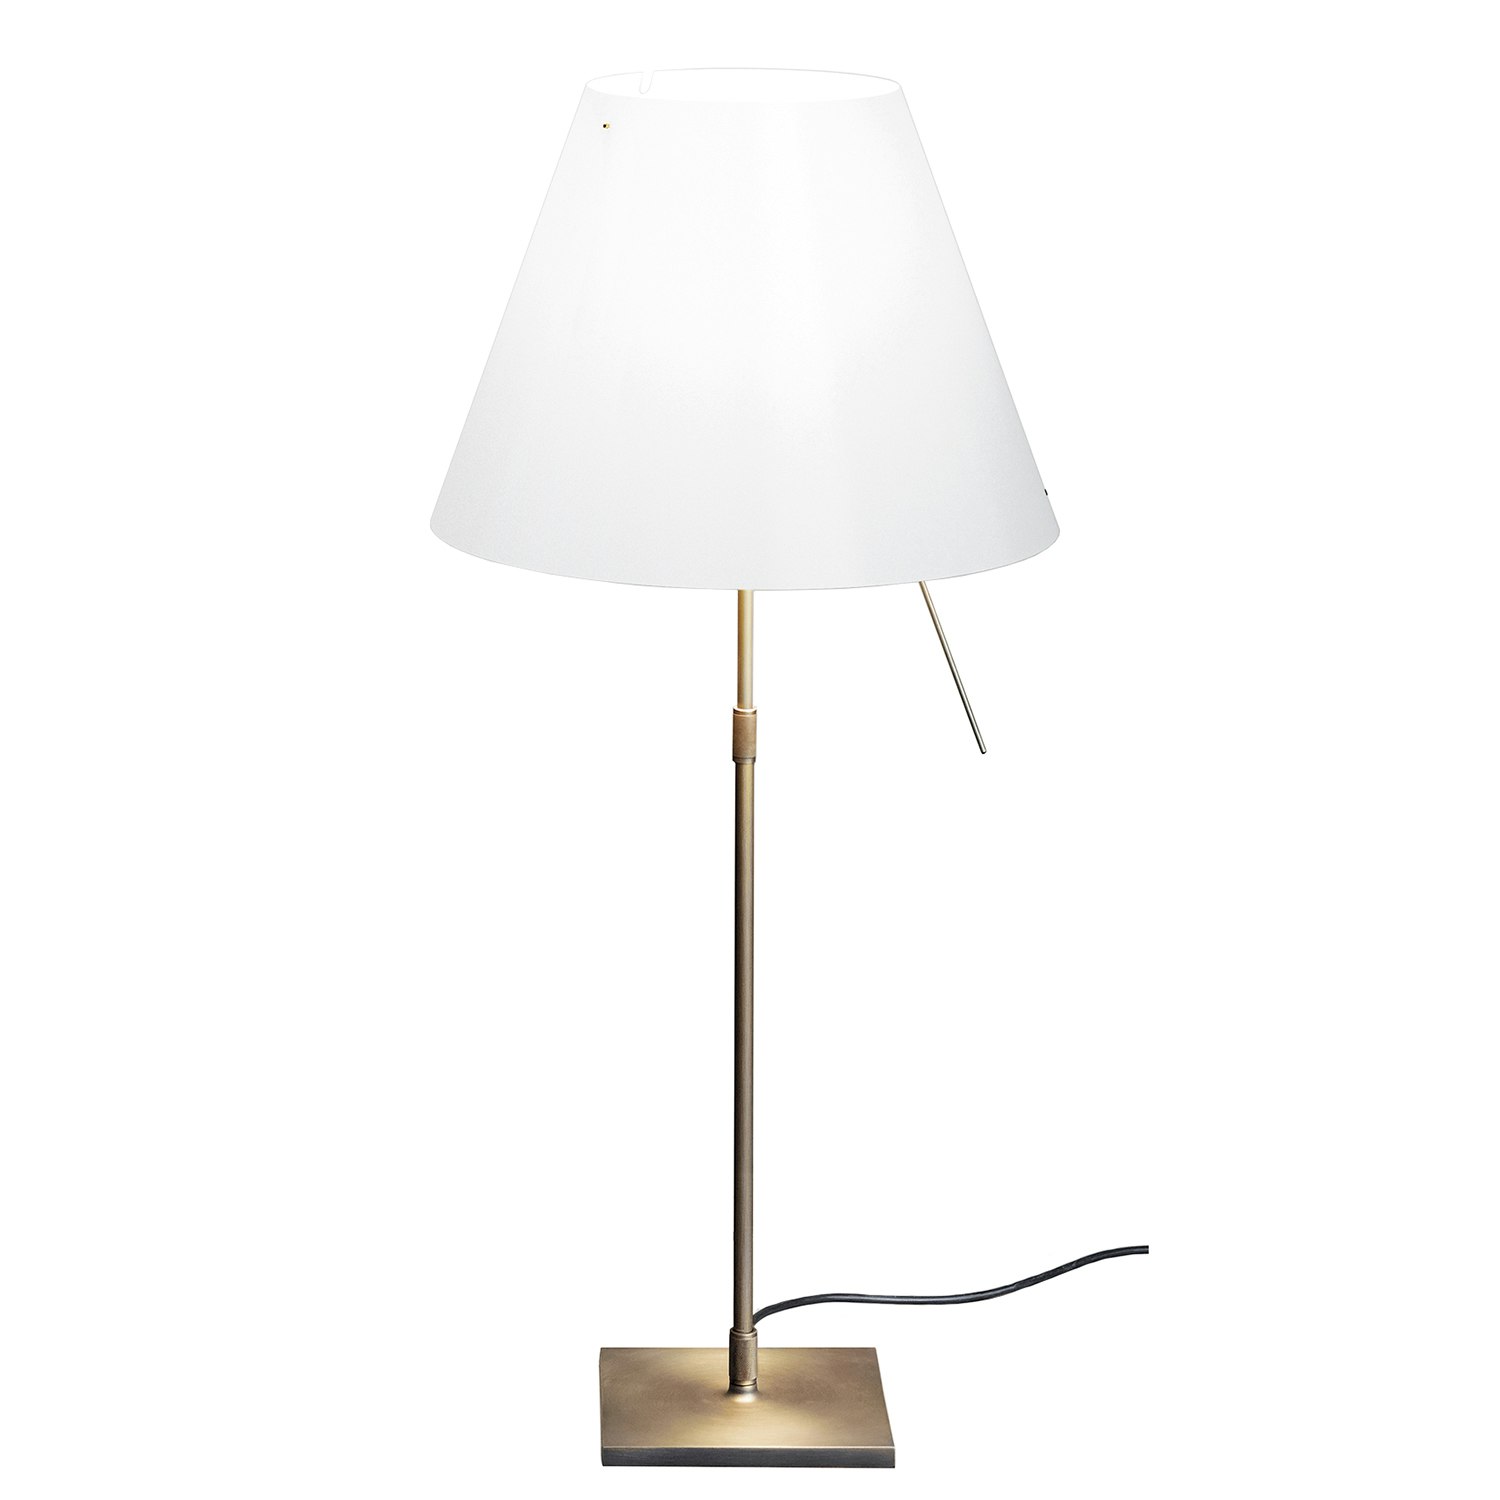 Bedside lamps - Designer bedroom lamps for your home | RoyalDesign.co.uk